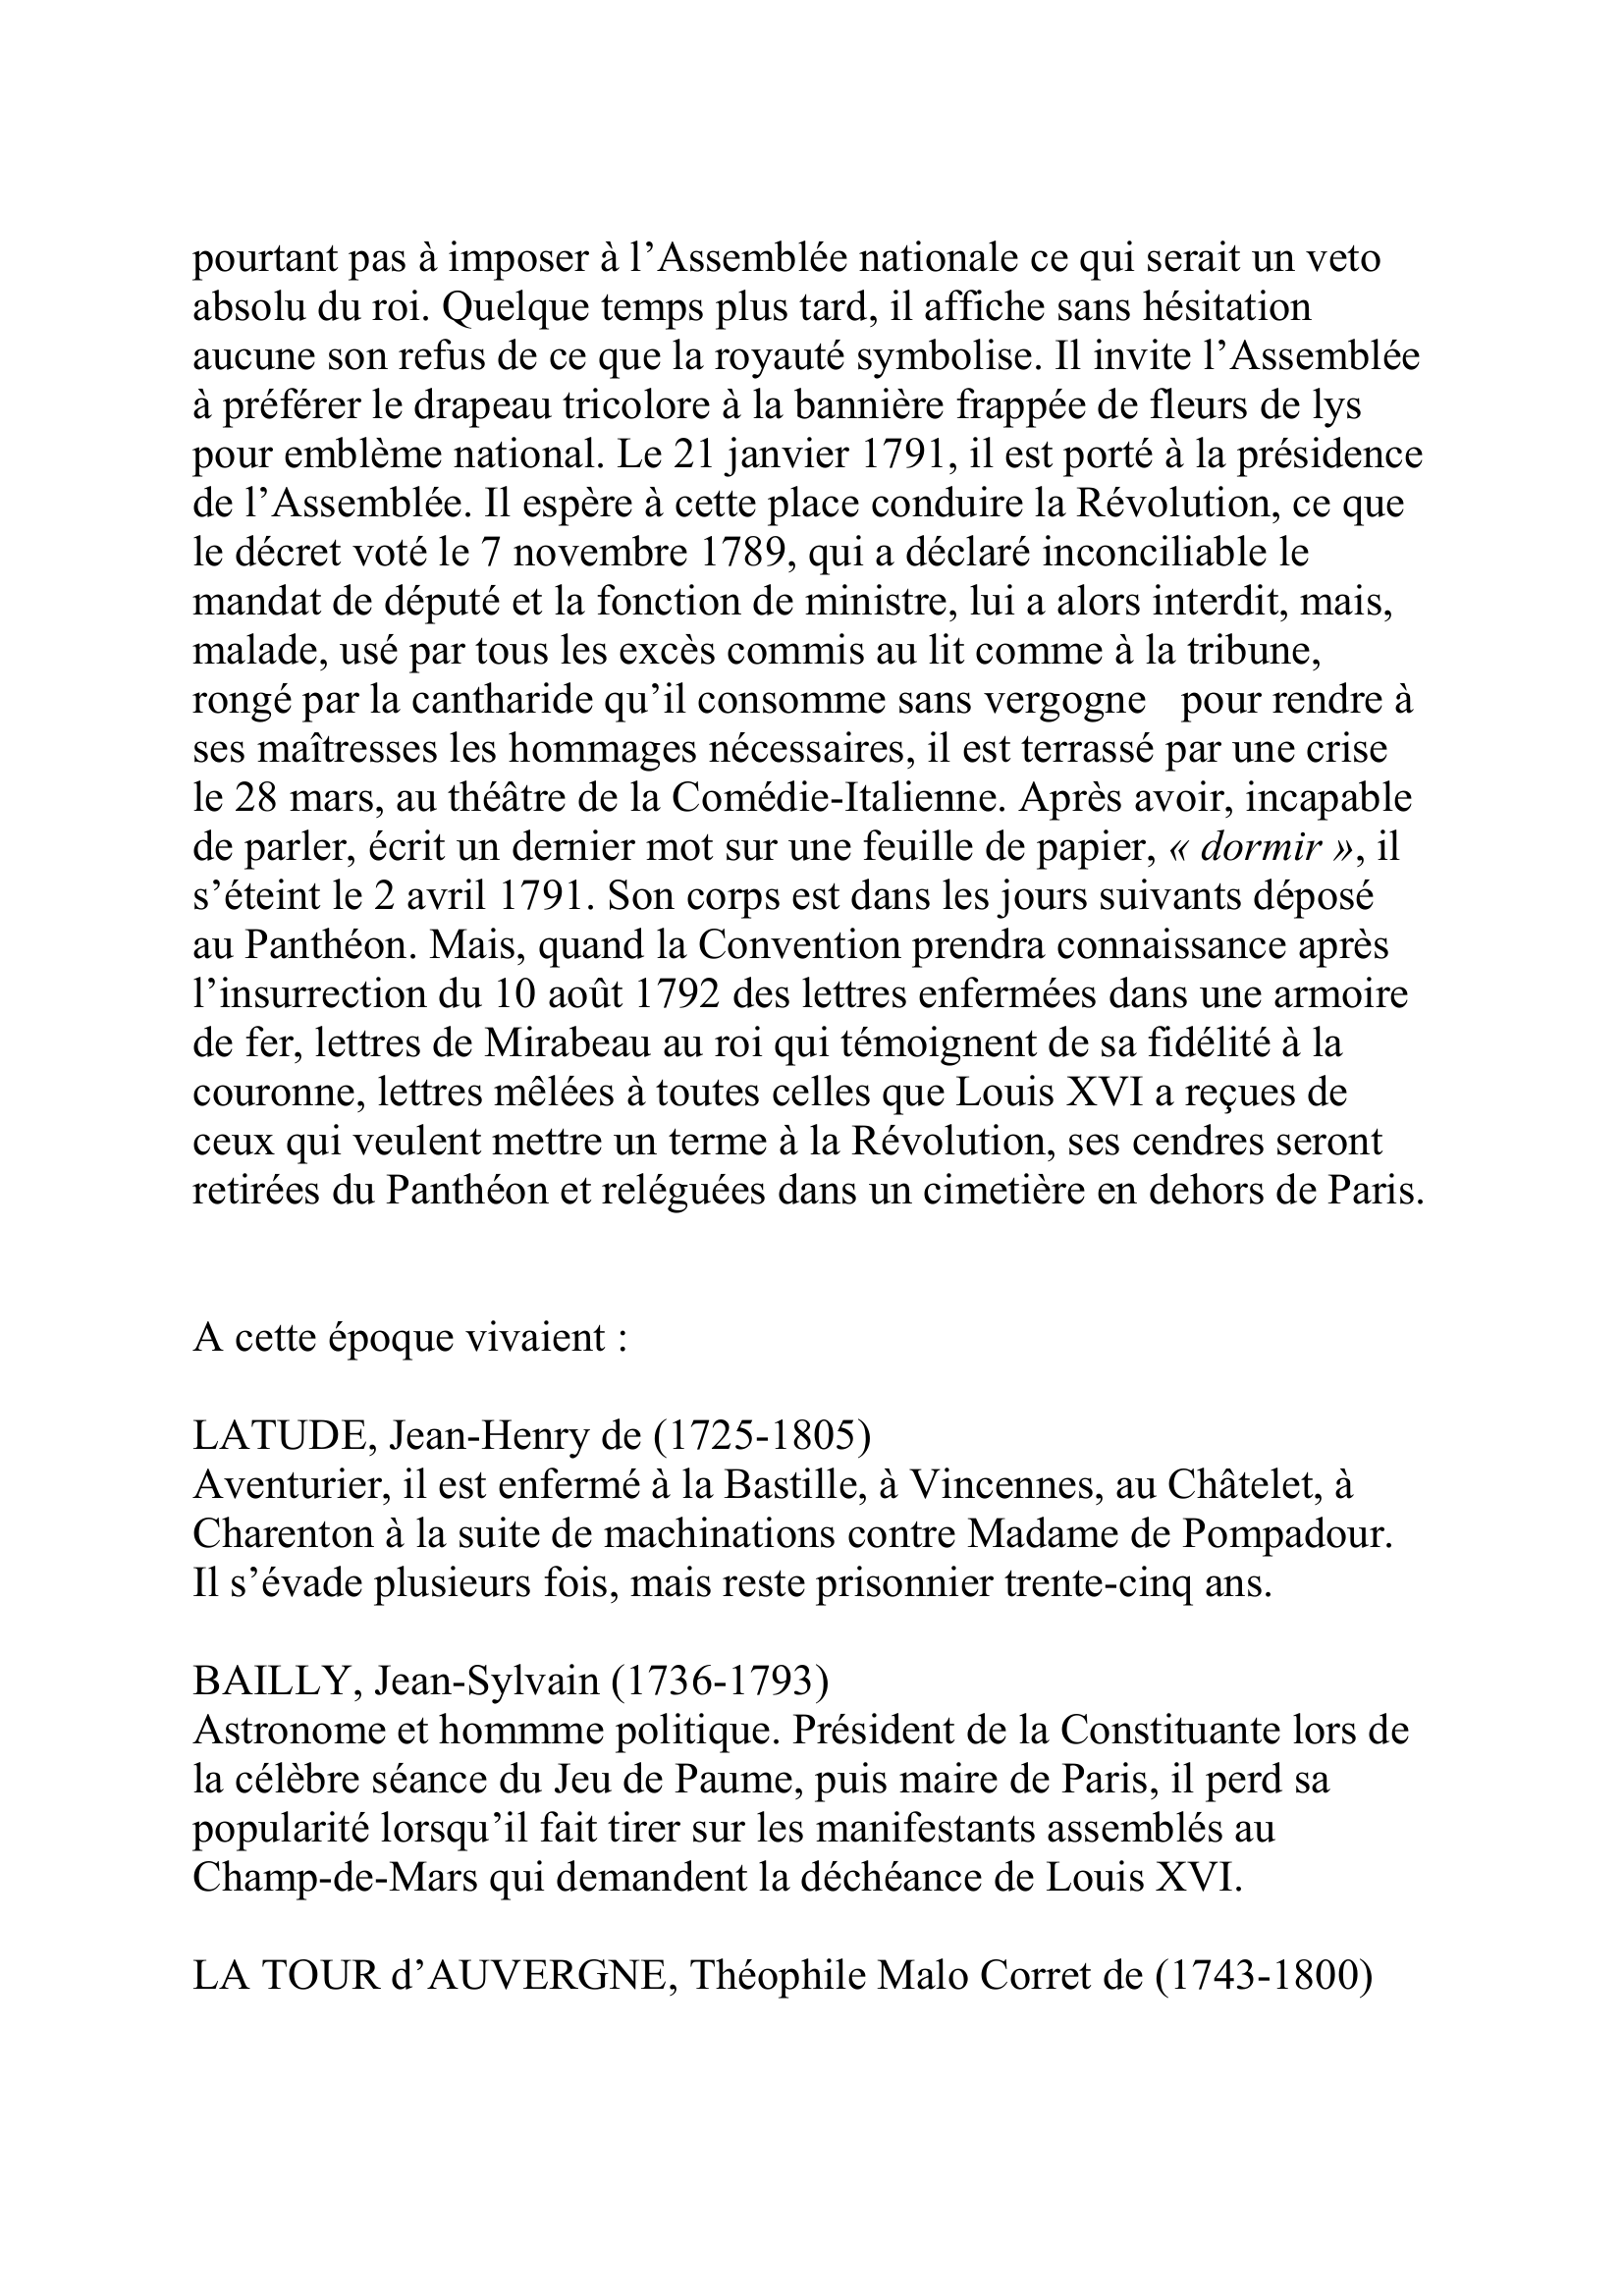 Prévisualisation du document MIRABEAU
Honoré Gabriel Riqueti, comte de
(1749-2 avril 1791)
Homme politique
Son père, Victor Riqueti, économiste, n'aime guère ce fils qui est
aussi laid qu'insolent.